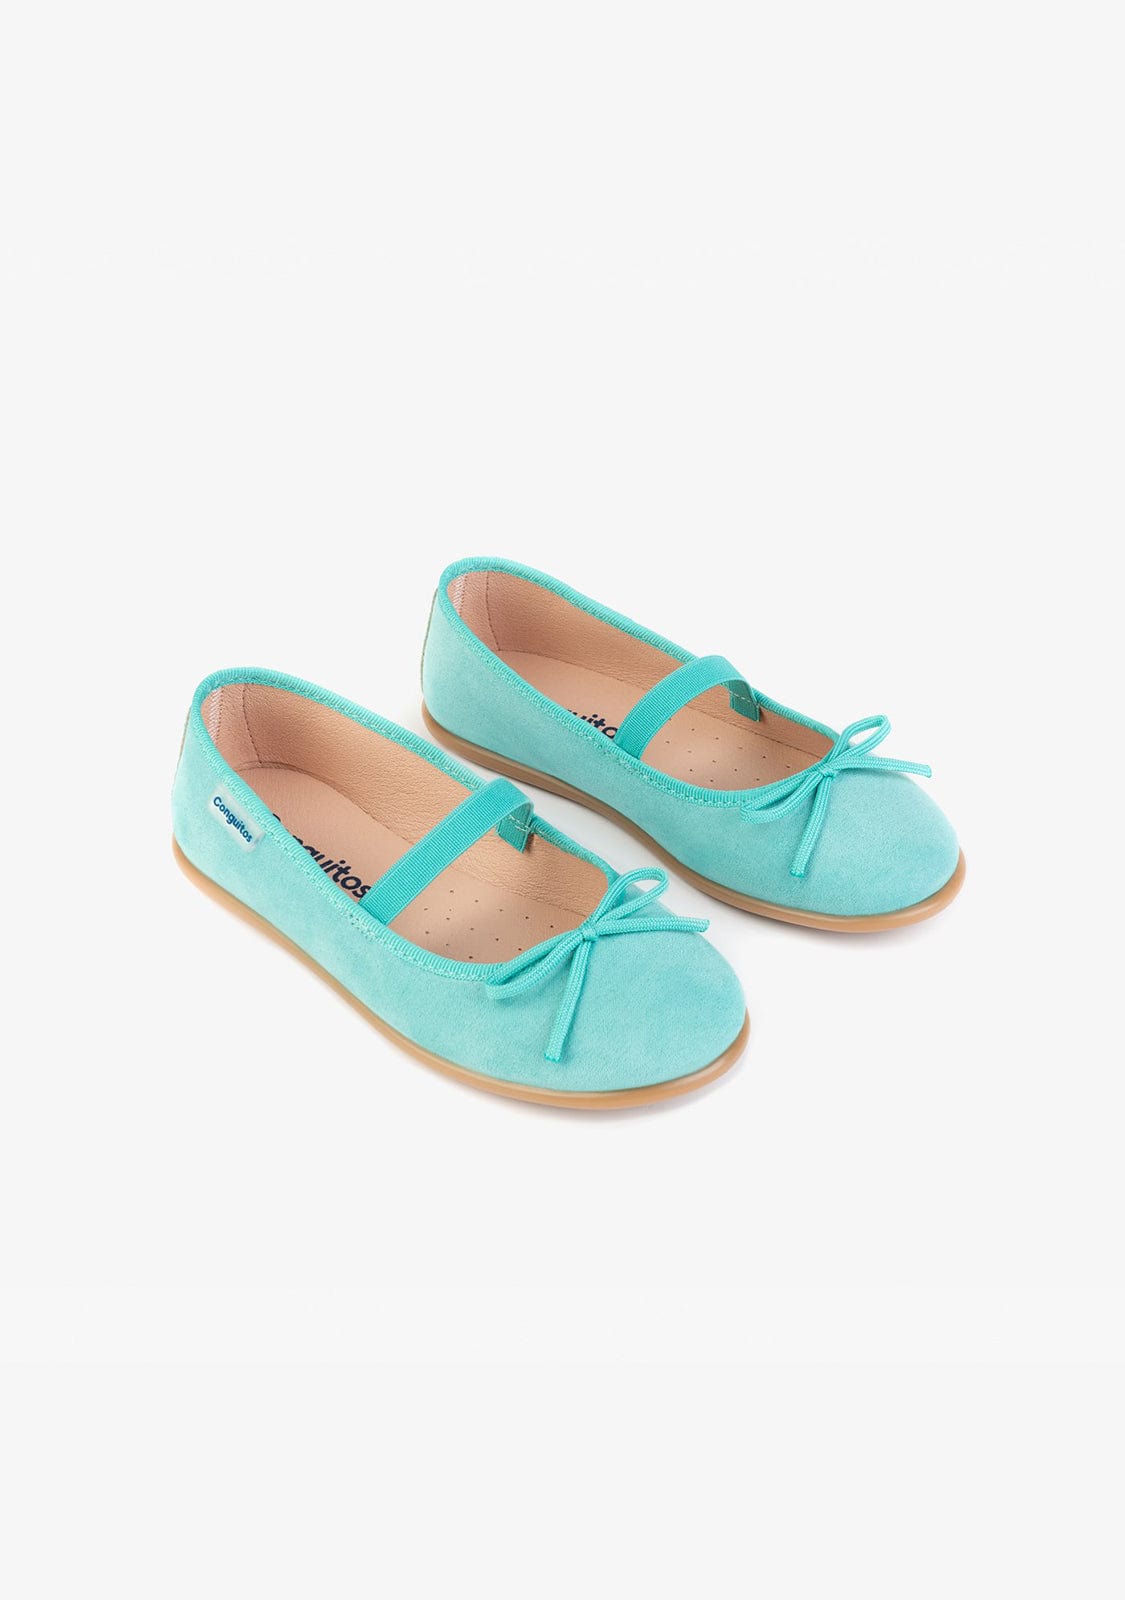 CONGUITOS Shoes Girl’s Blue Basic Ballerinas